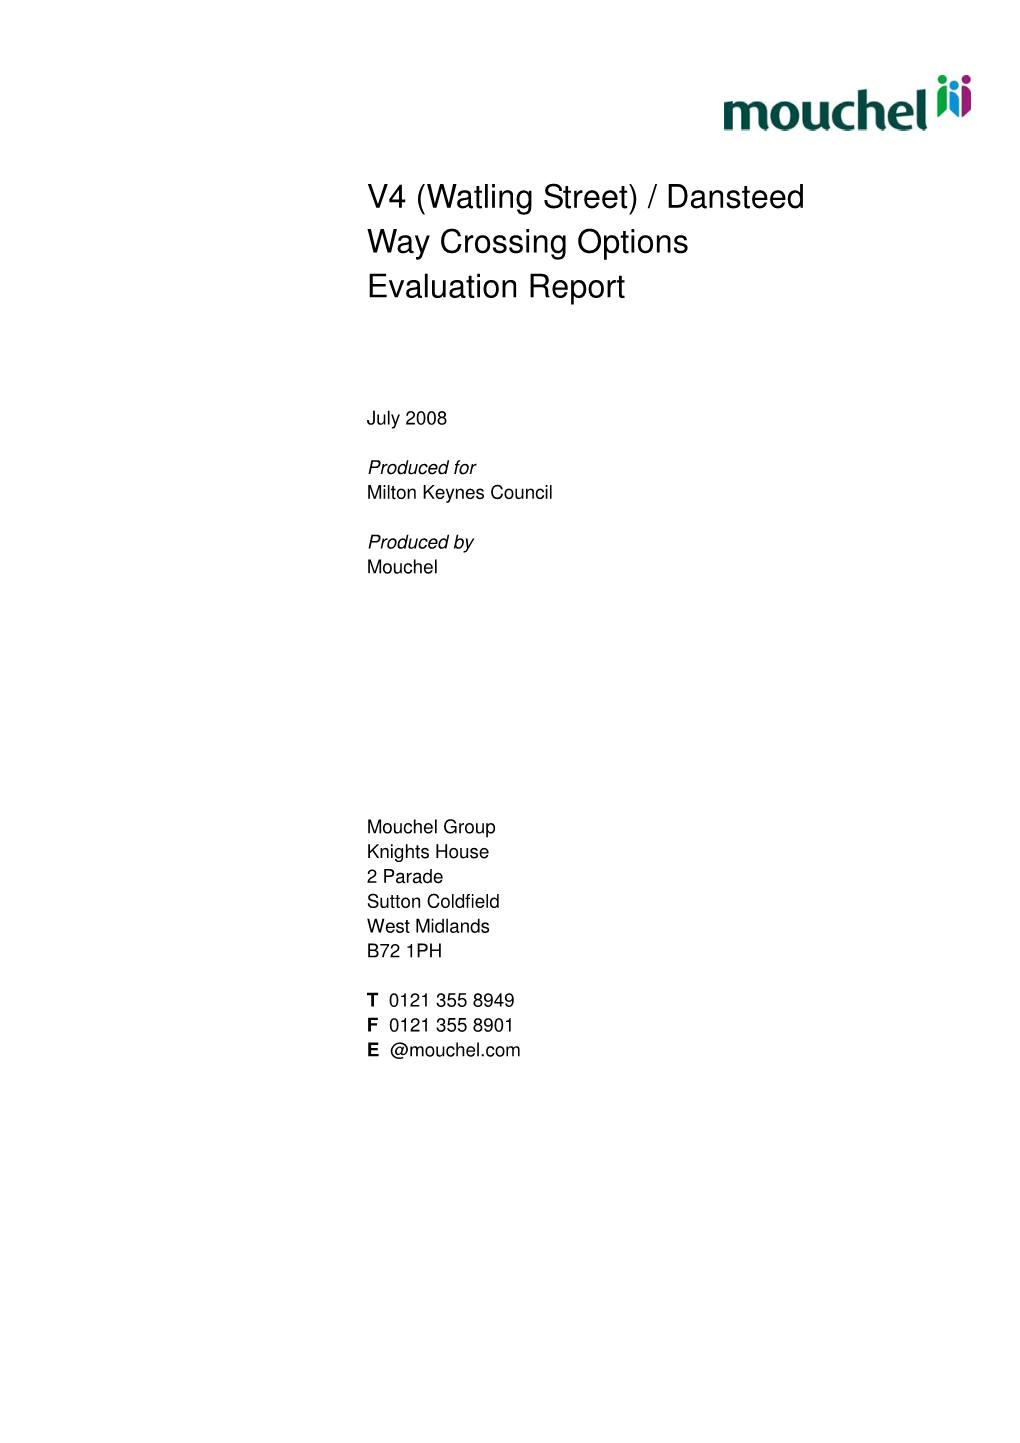 V4 (Watling Street) / Dansteed Way Crossing Options Evaluation Report